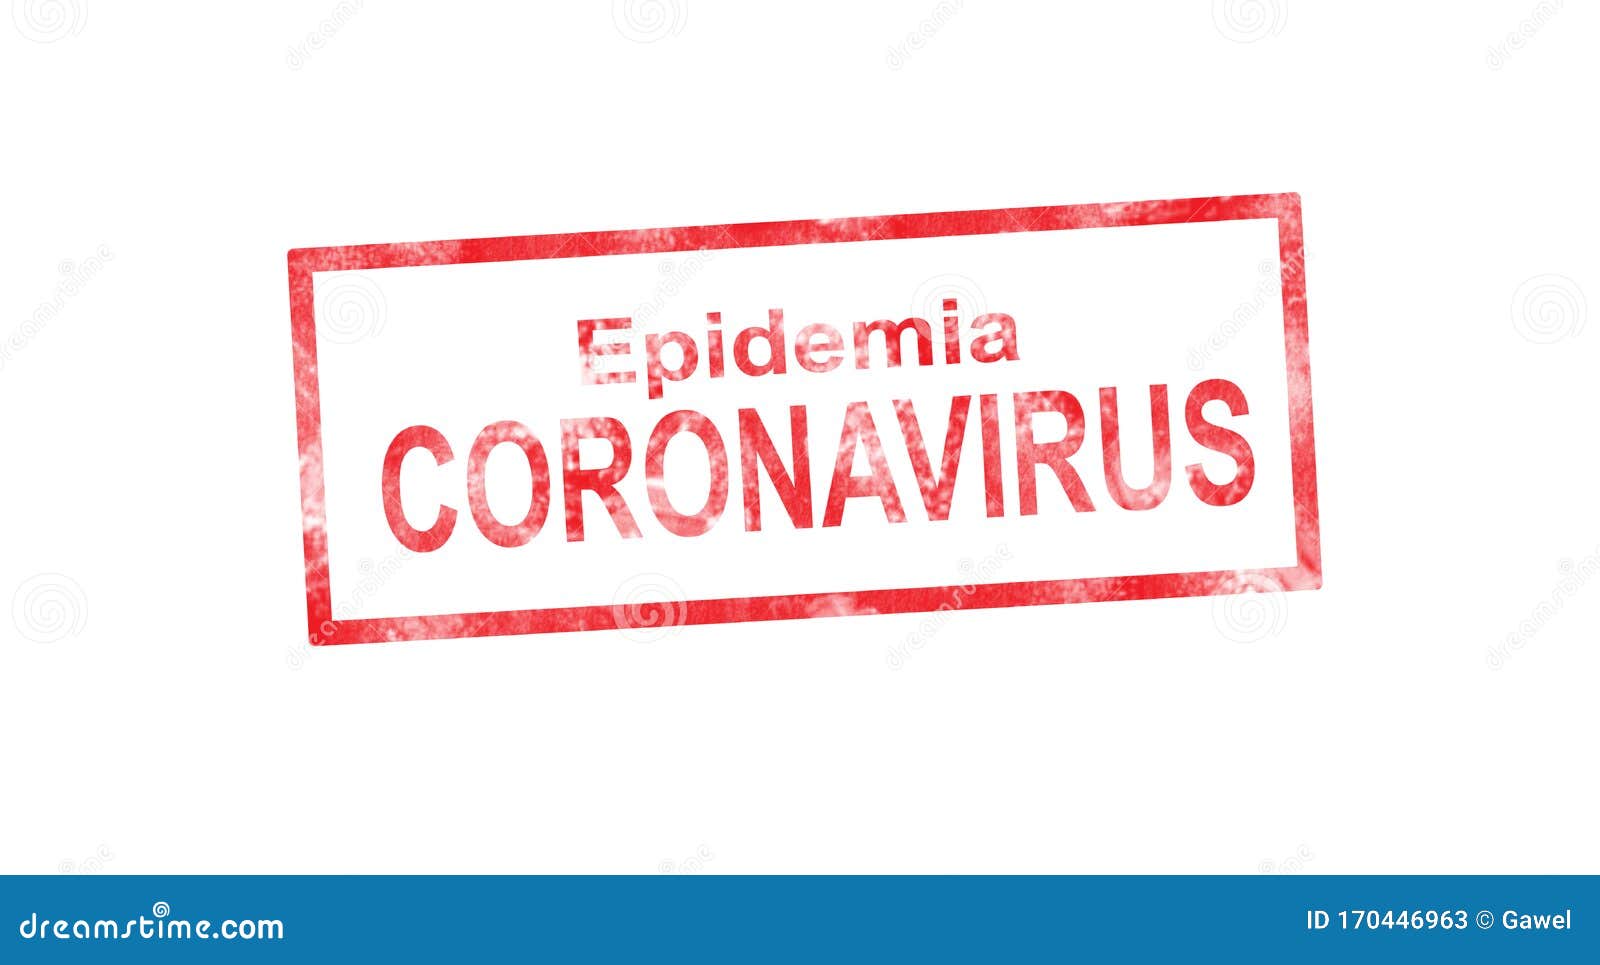 coronavirus epidemia in red stamp 